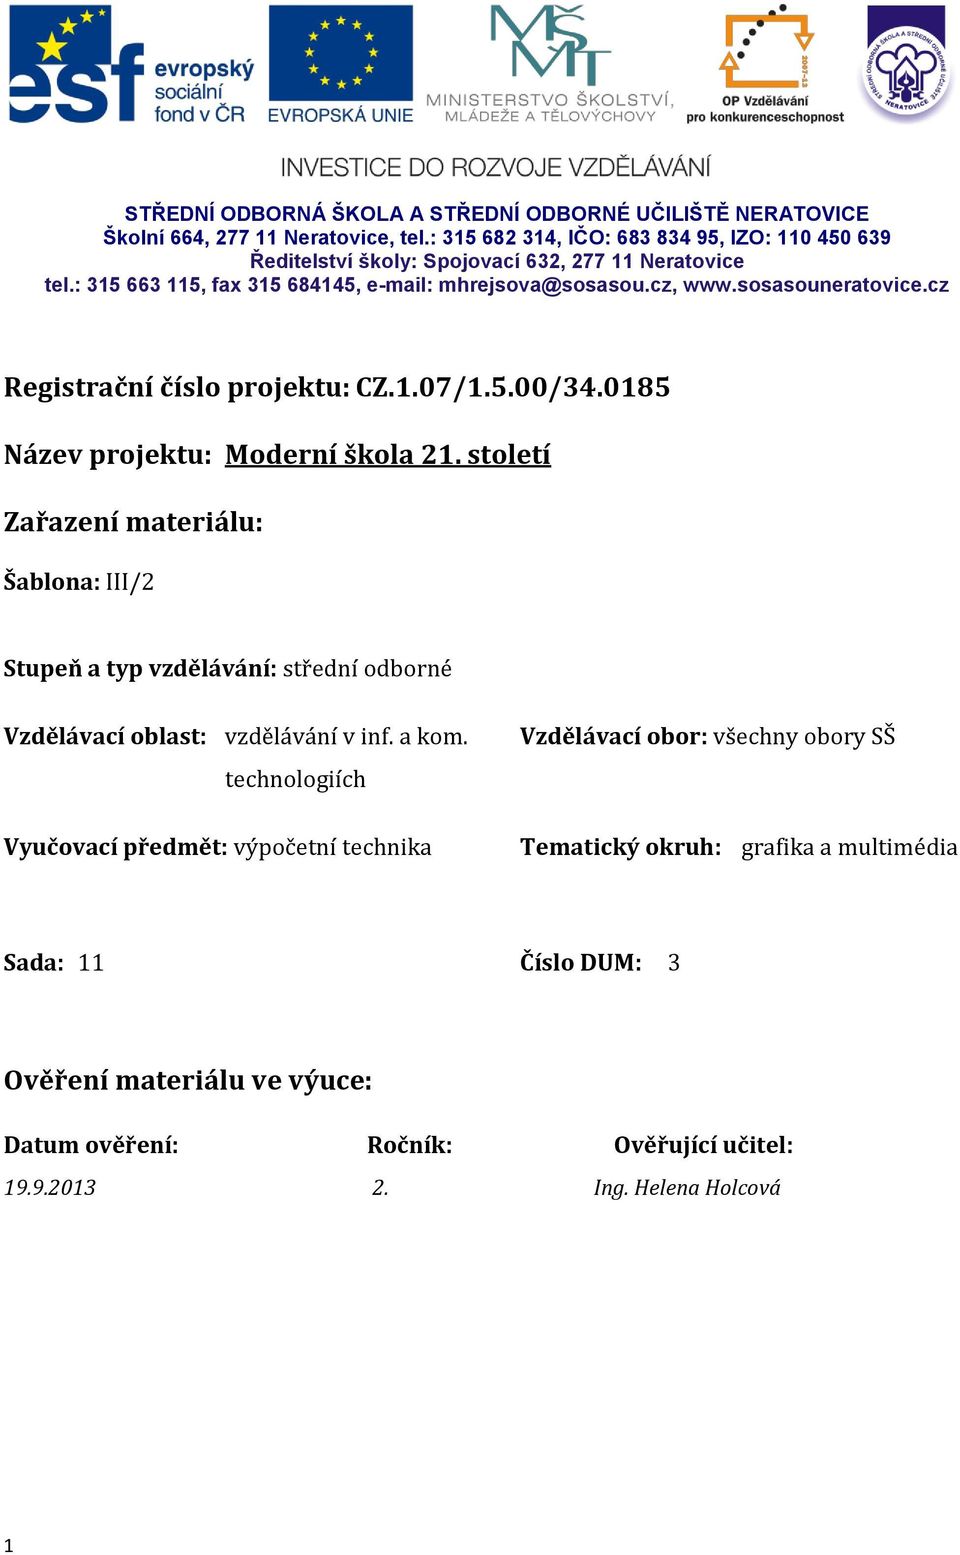 sosasouneratovice.cz Registrační číslo projektu: CZ.1.07/1.5.00/34.0185 Název projektu: Moderní škola 21.